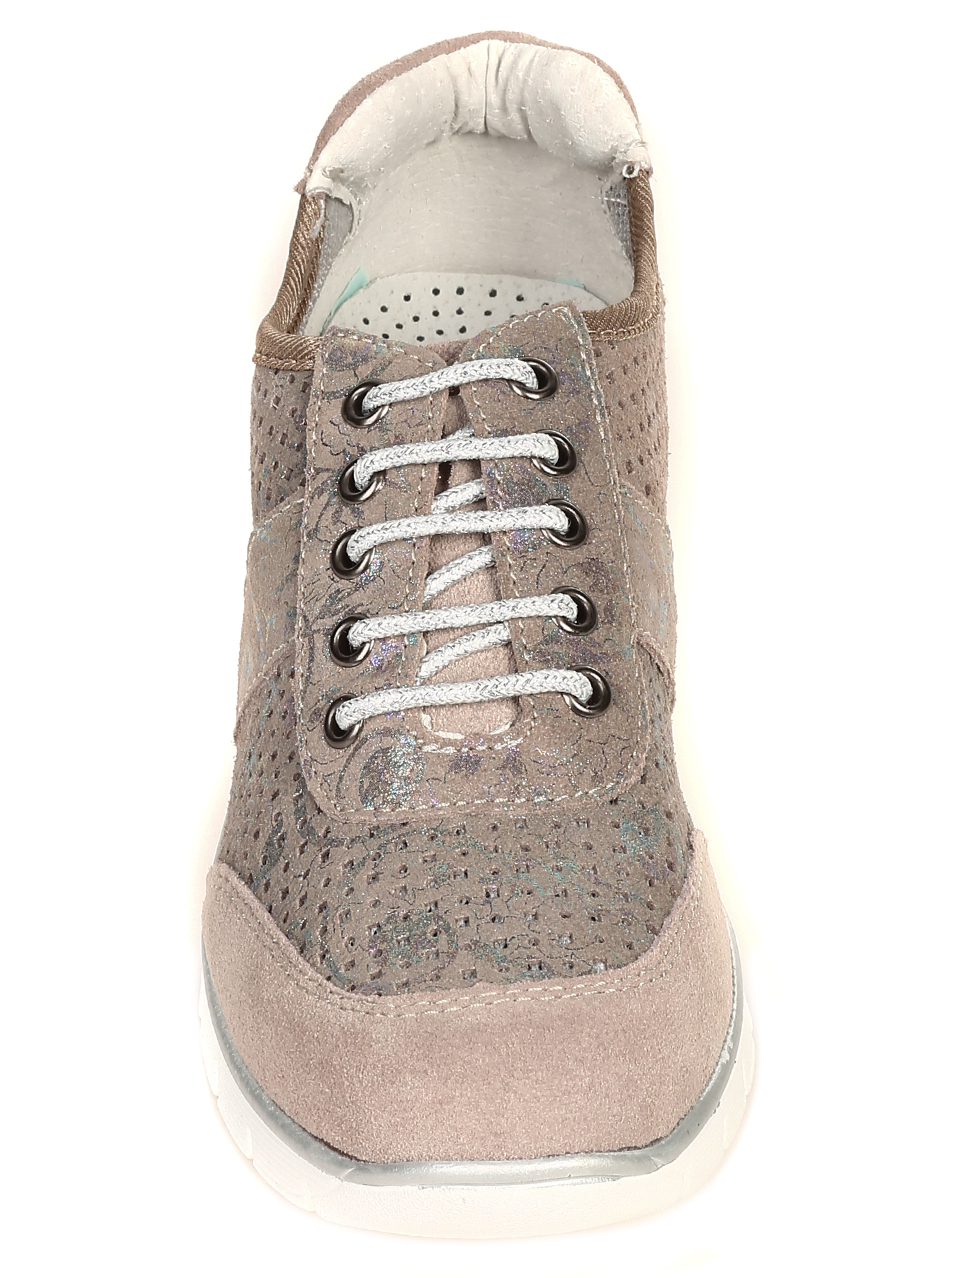 Дамски обувки от естествена кожа в бежово 3AF-21106 beige-19072